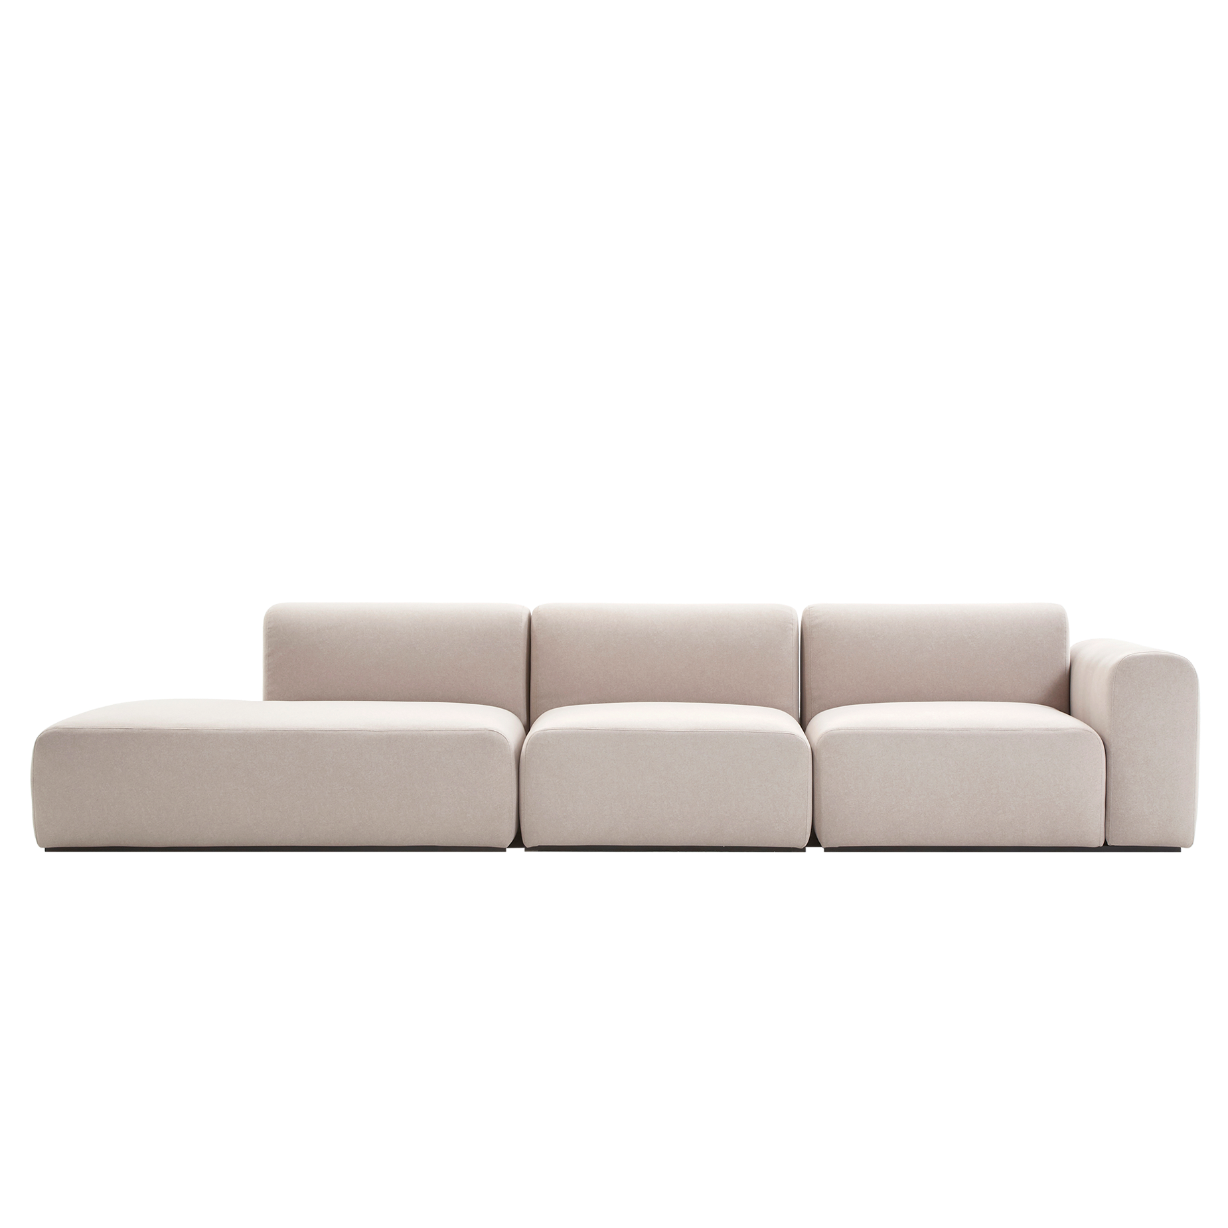 (주)도이치 전시품 판매(일산)      [3주 주문제작]    DOICH ® Aquaclean PEN3 modular couch sofa  도이치 Pen3  4인 카우치 소파 ( 카우치+1인+1.5인) ) /(스페인 아쿠아클린)  [3주 주문제작]